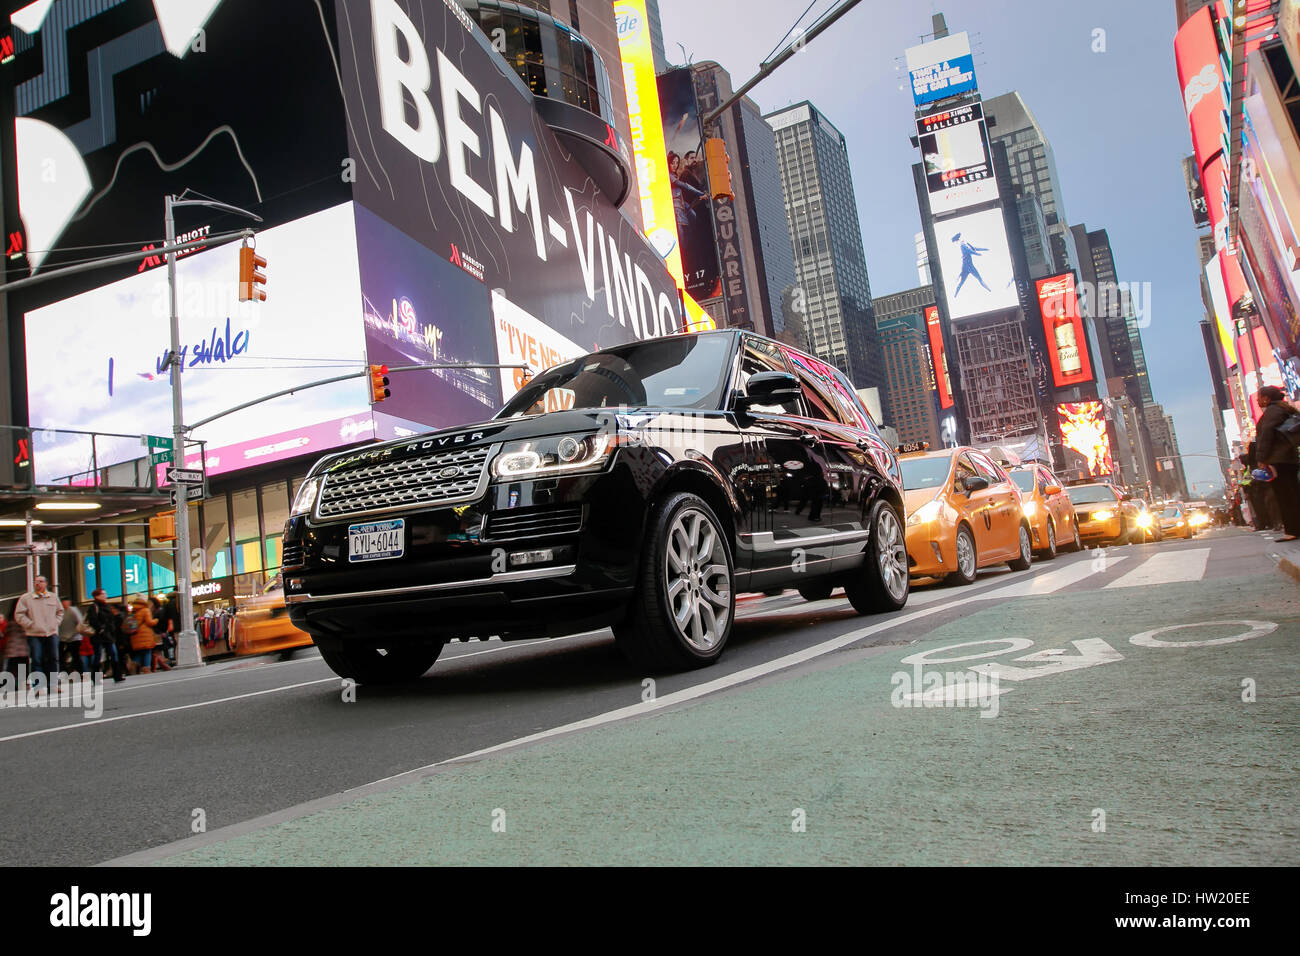 Ein Range Rover SUV und eine Zeichenkette von Yellow Cabs dahinter sind im Verkehr am Broadway an Times Square zu sehen. Stockfoto